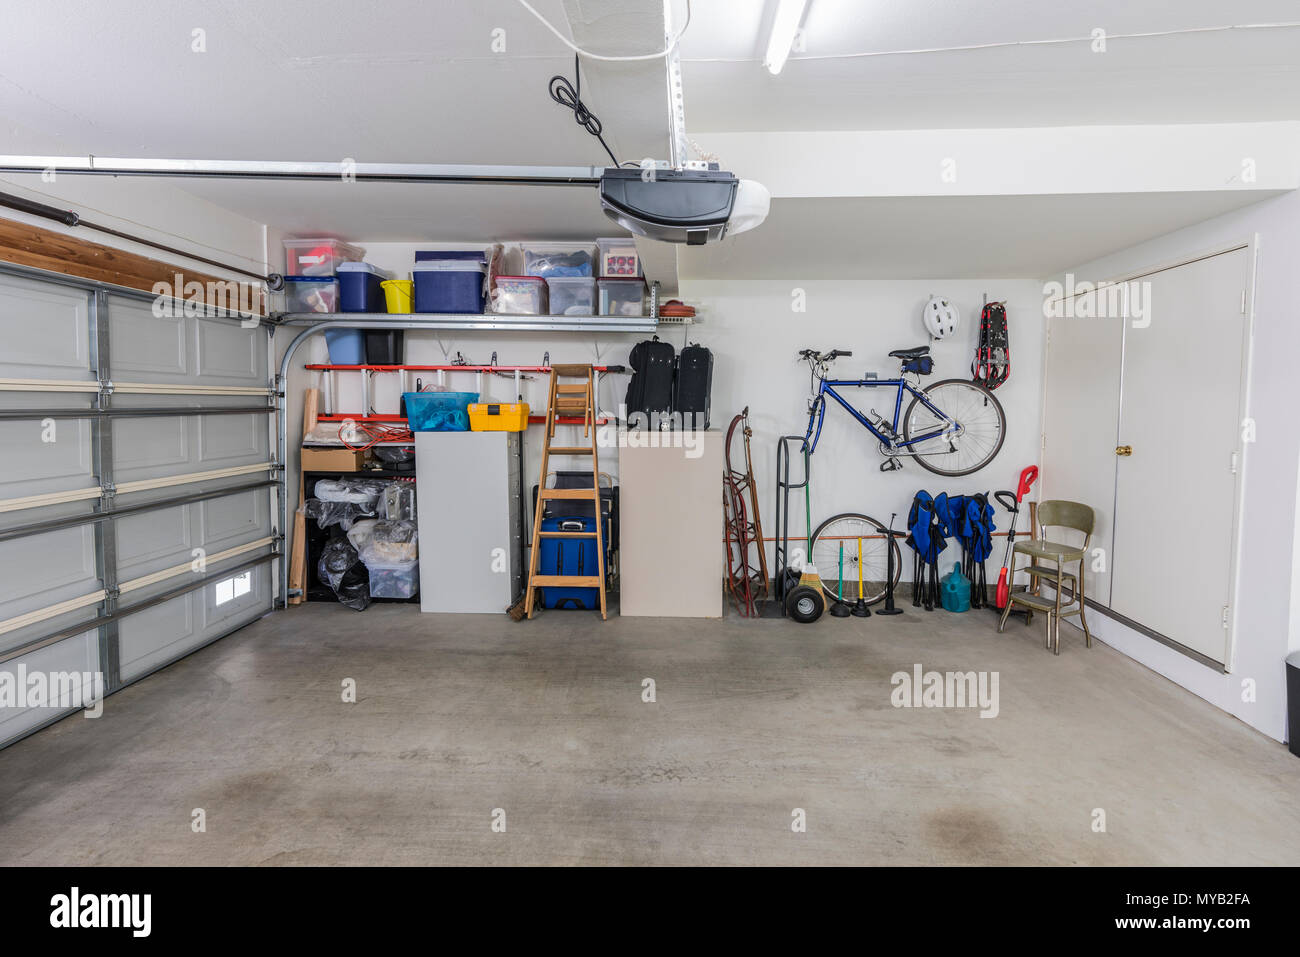 Organisierte sauber vorstädtischen Wohnviertel Garage für zwei Autos mit Werkzeugen, Aktenschränke und Sportgeräte. Stockfoto